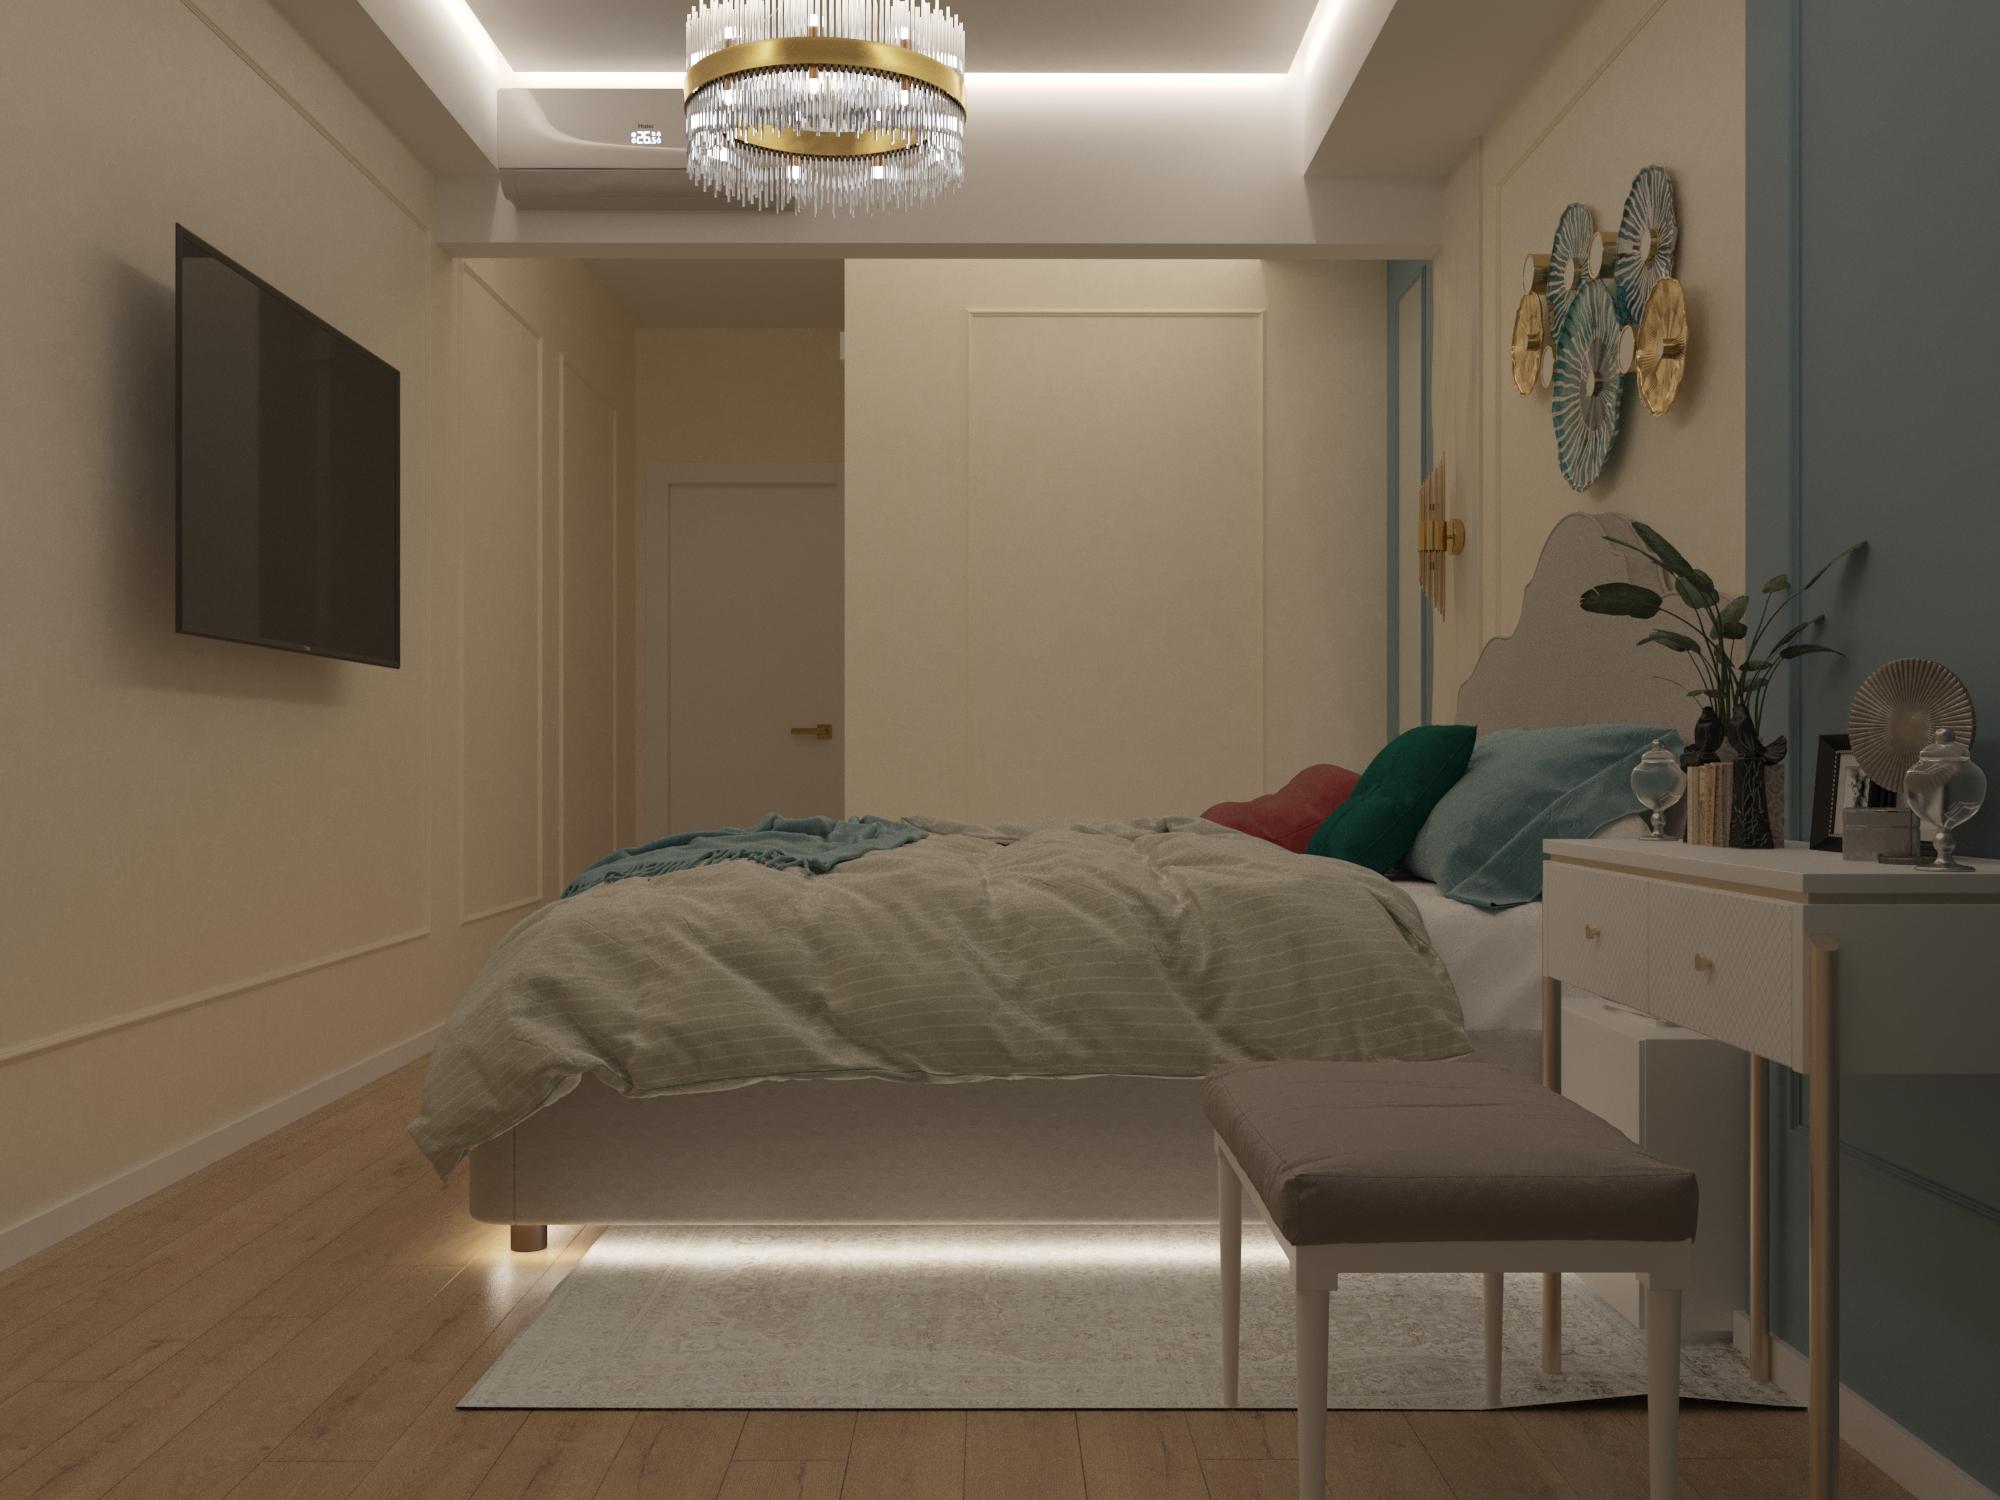 Интерьер спальни cветовыми линиями, подсветкой светодиодной и светильниками над кроватью